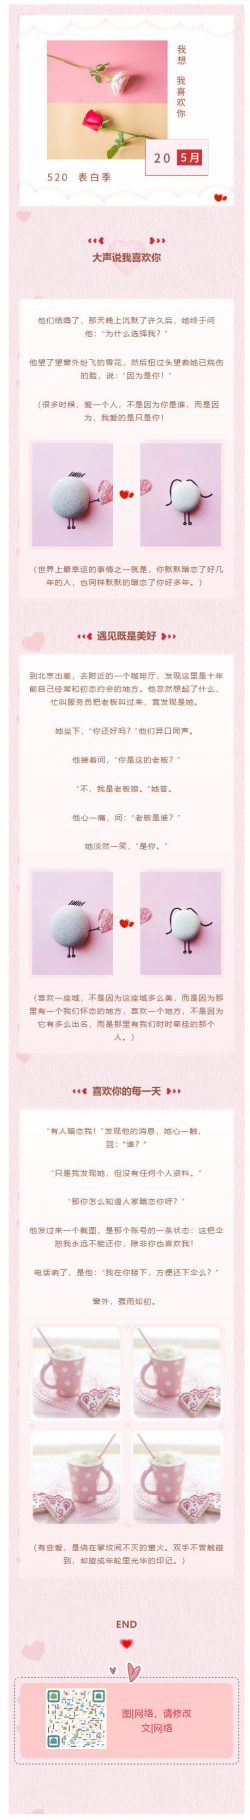 520情人节快乐520浪漫表白粉红色背景图微信模板公众号素材